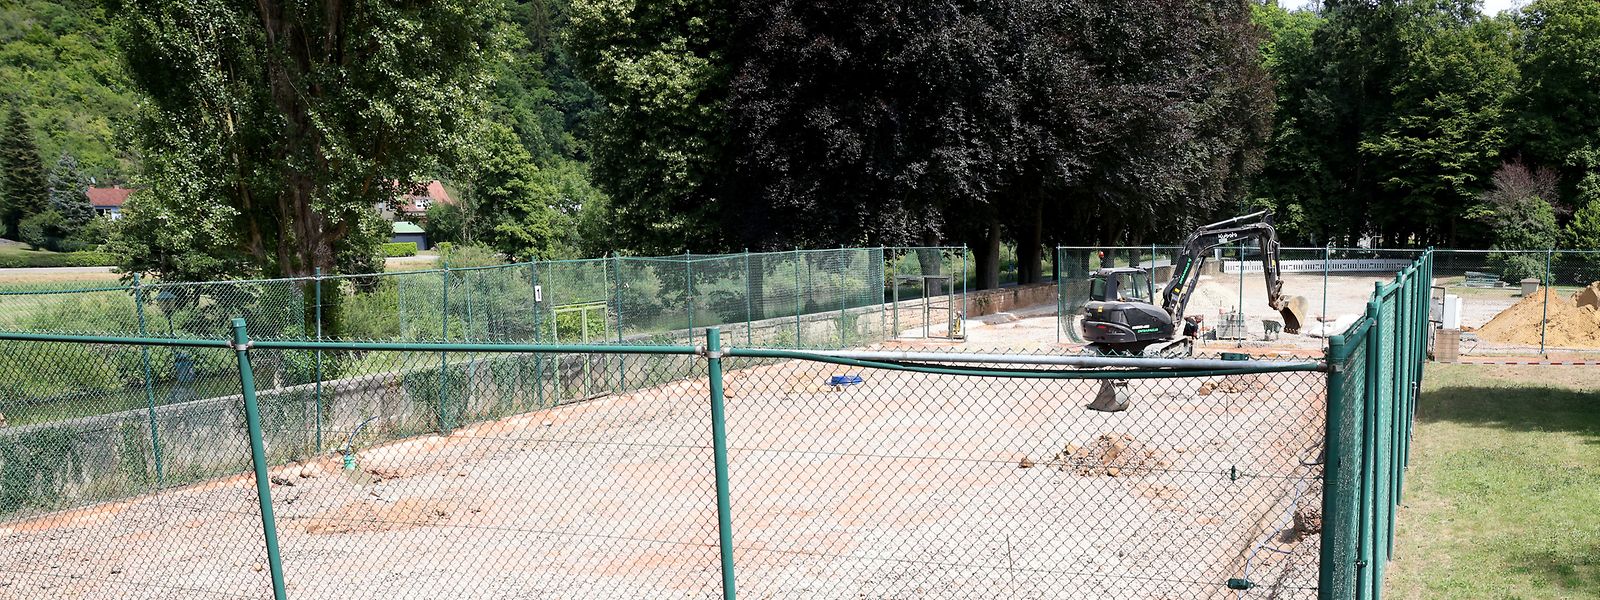 Dans le parc d'Echternach, le minigolf et les courts de tennis ne sont toujours pas utilisables un an après l'inondation.